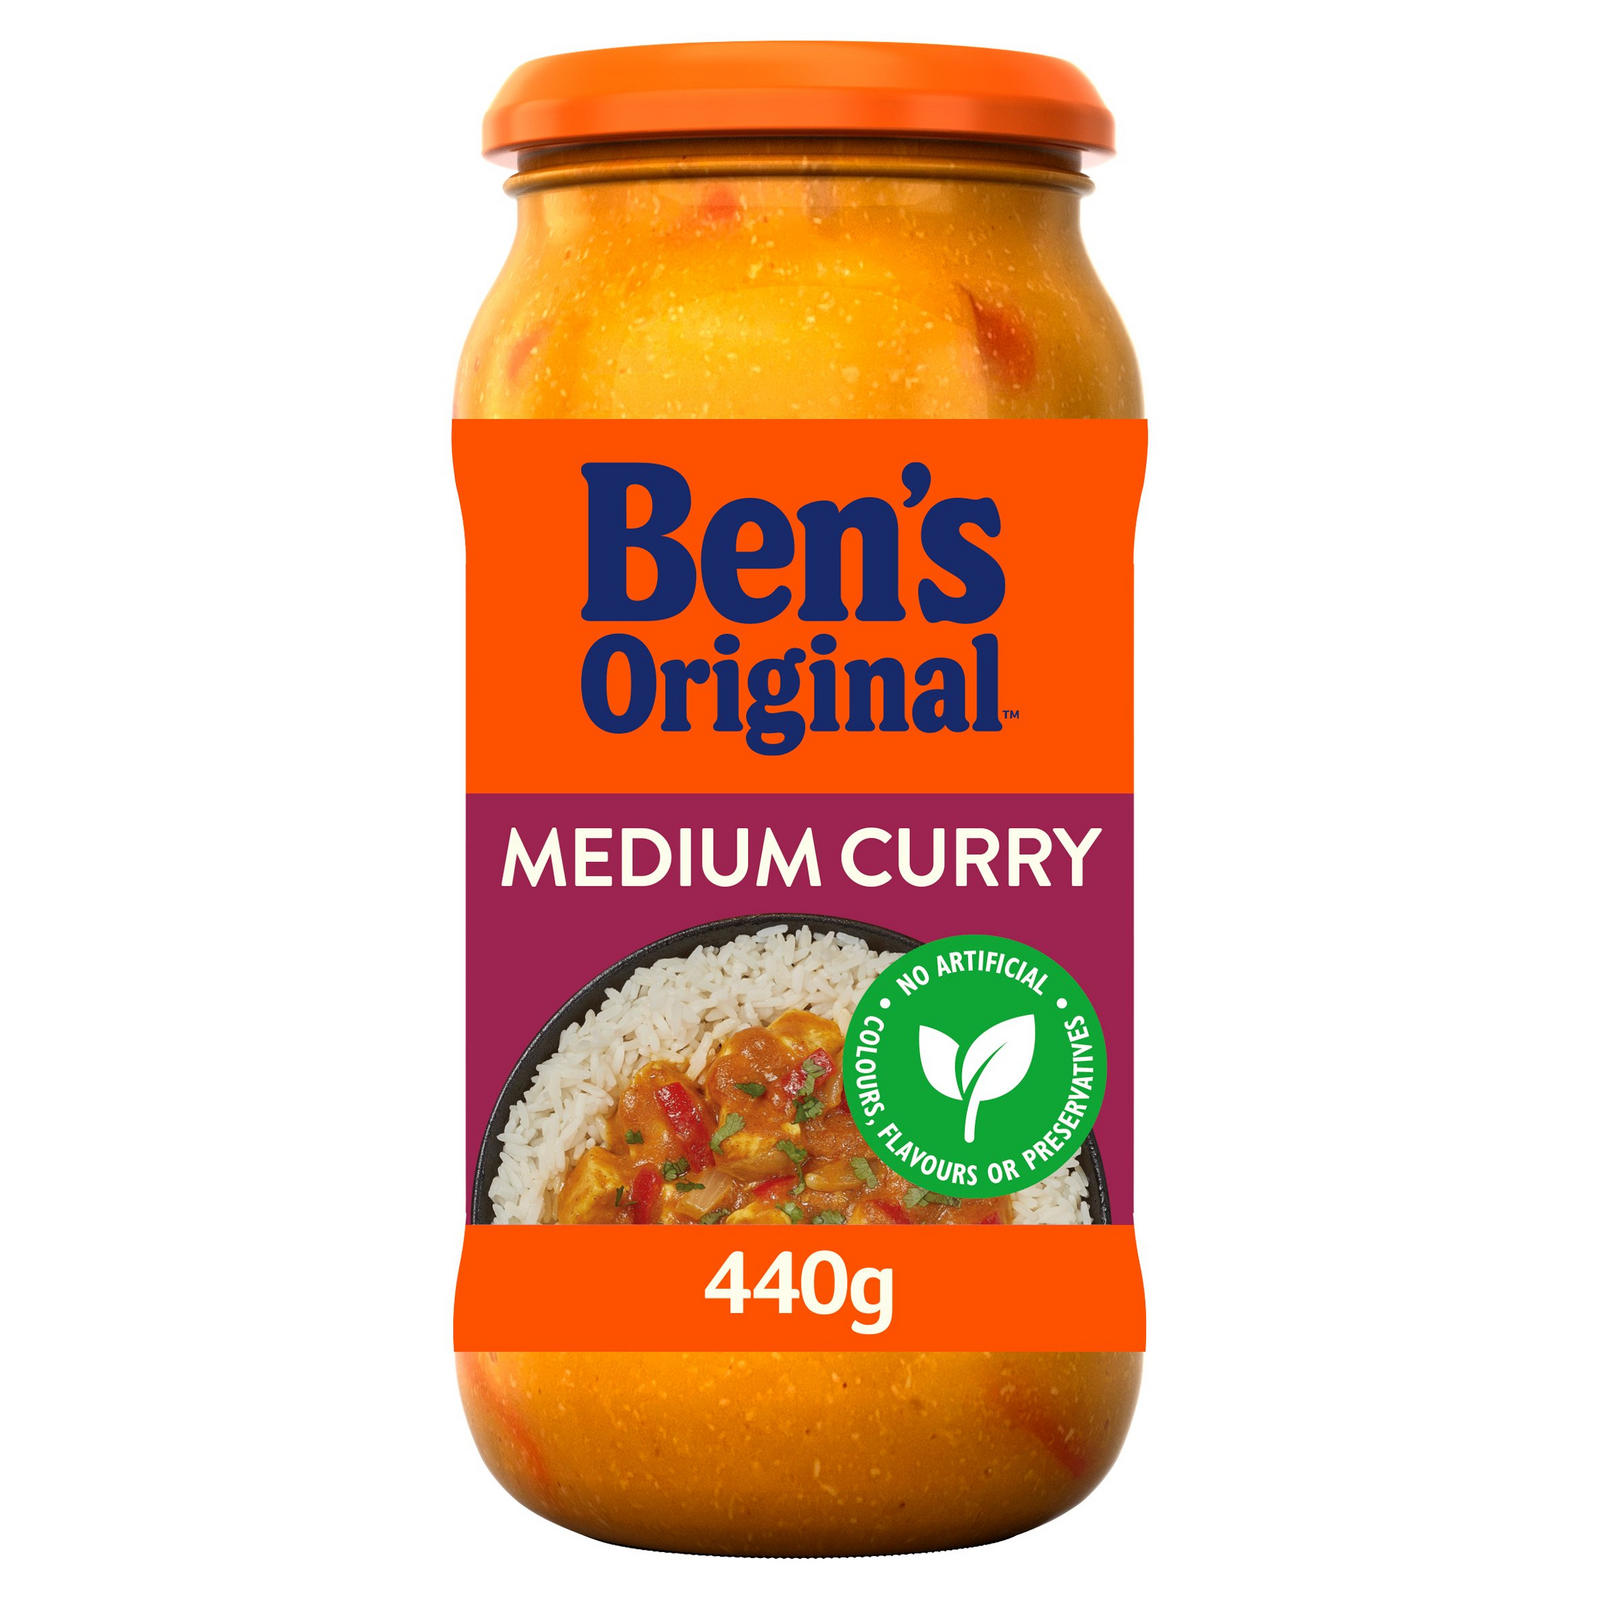 Bens Original Medium Curry Sauce 440g | Indian and Curry Sauces ...